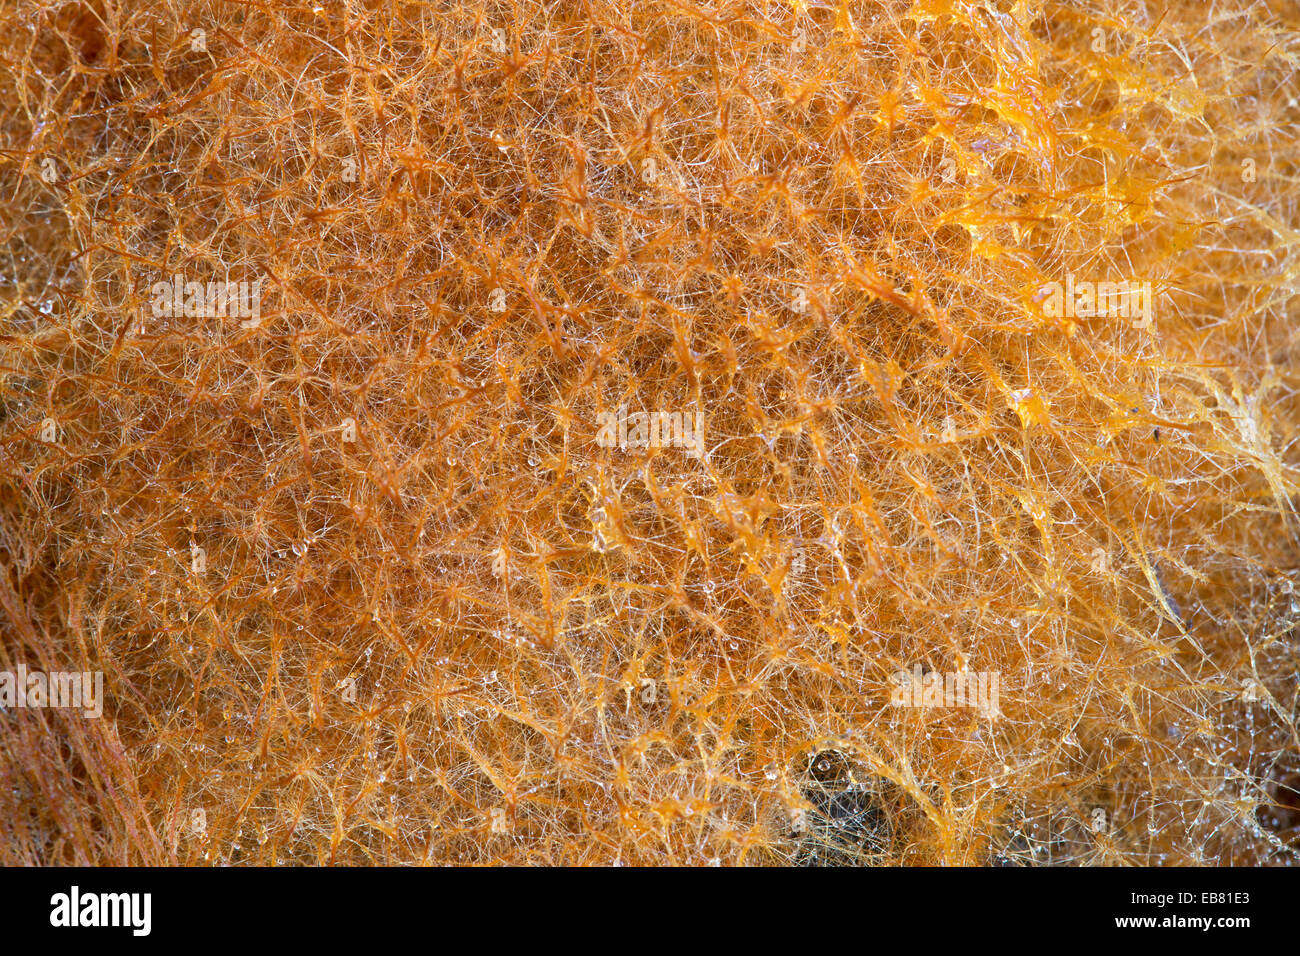 Close-up of Ozonium, open air fungal mycelium, Stock Photo